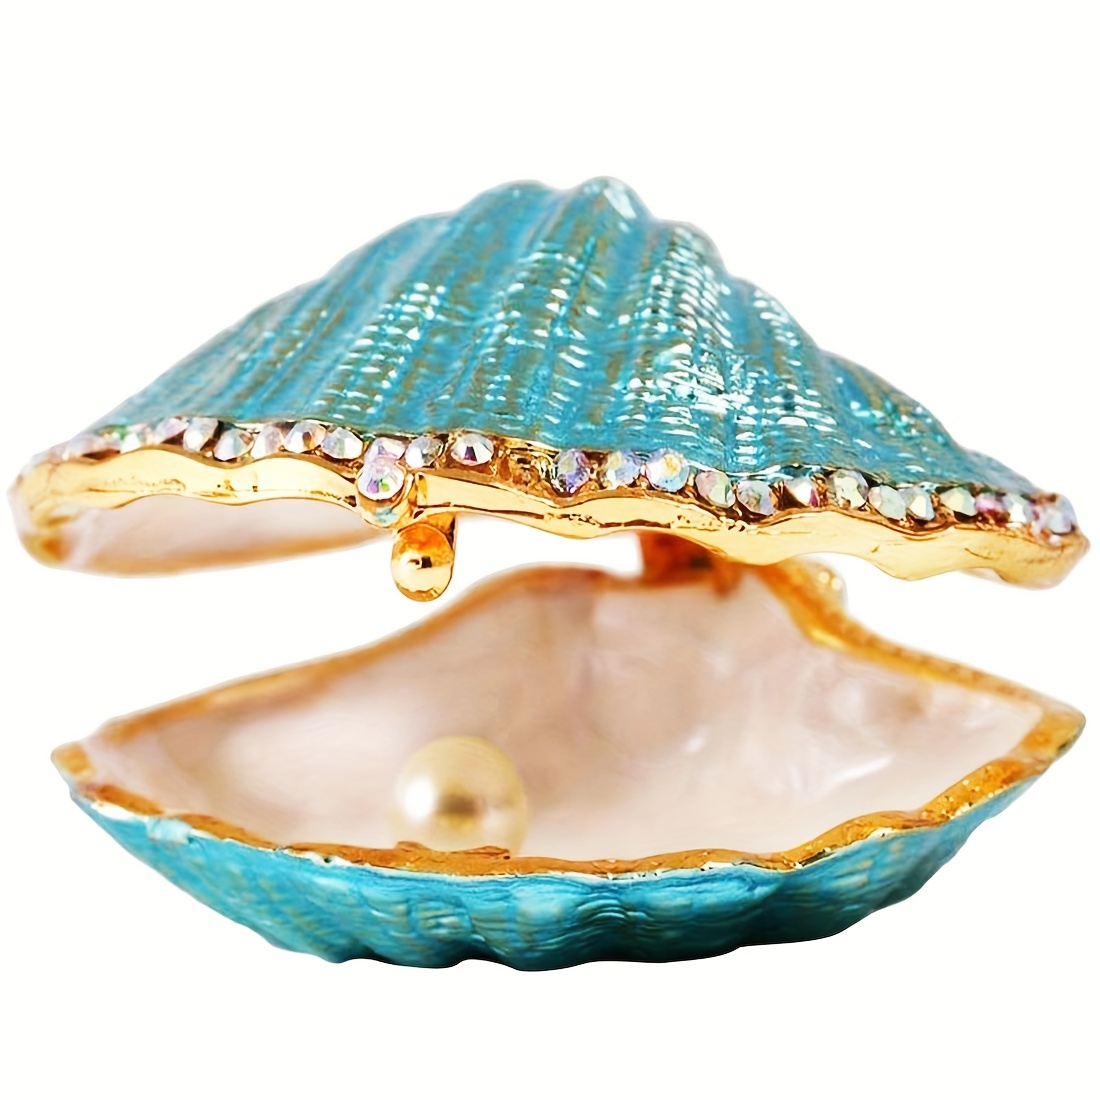 Seashell Figurines -  Australia